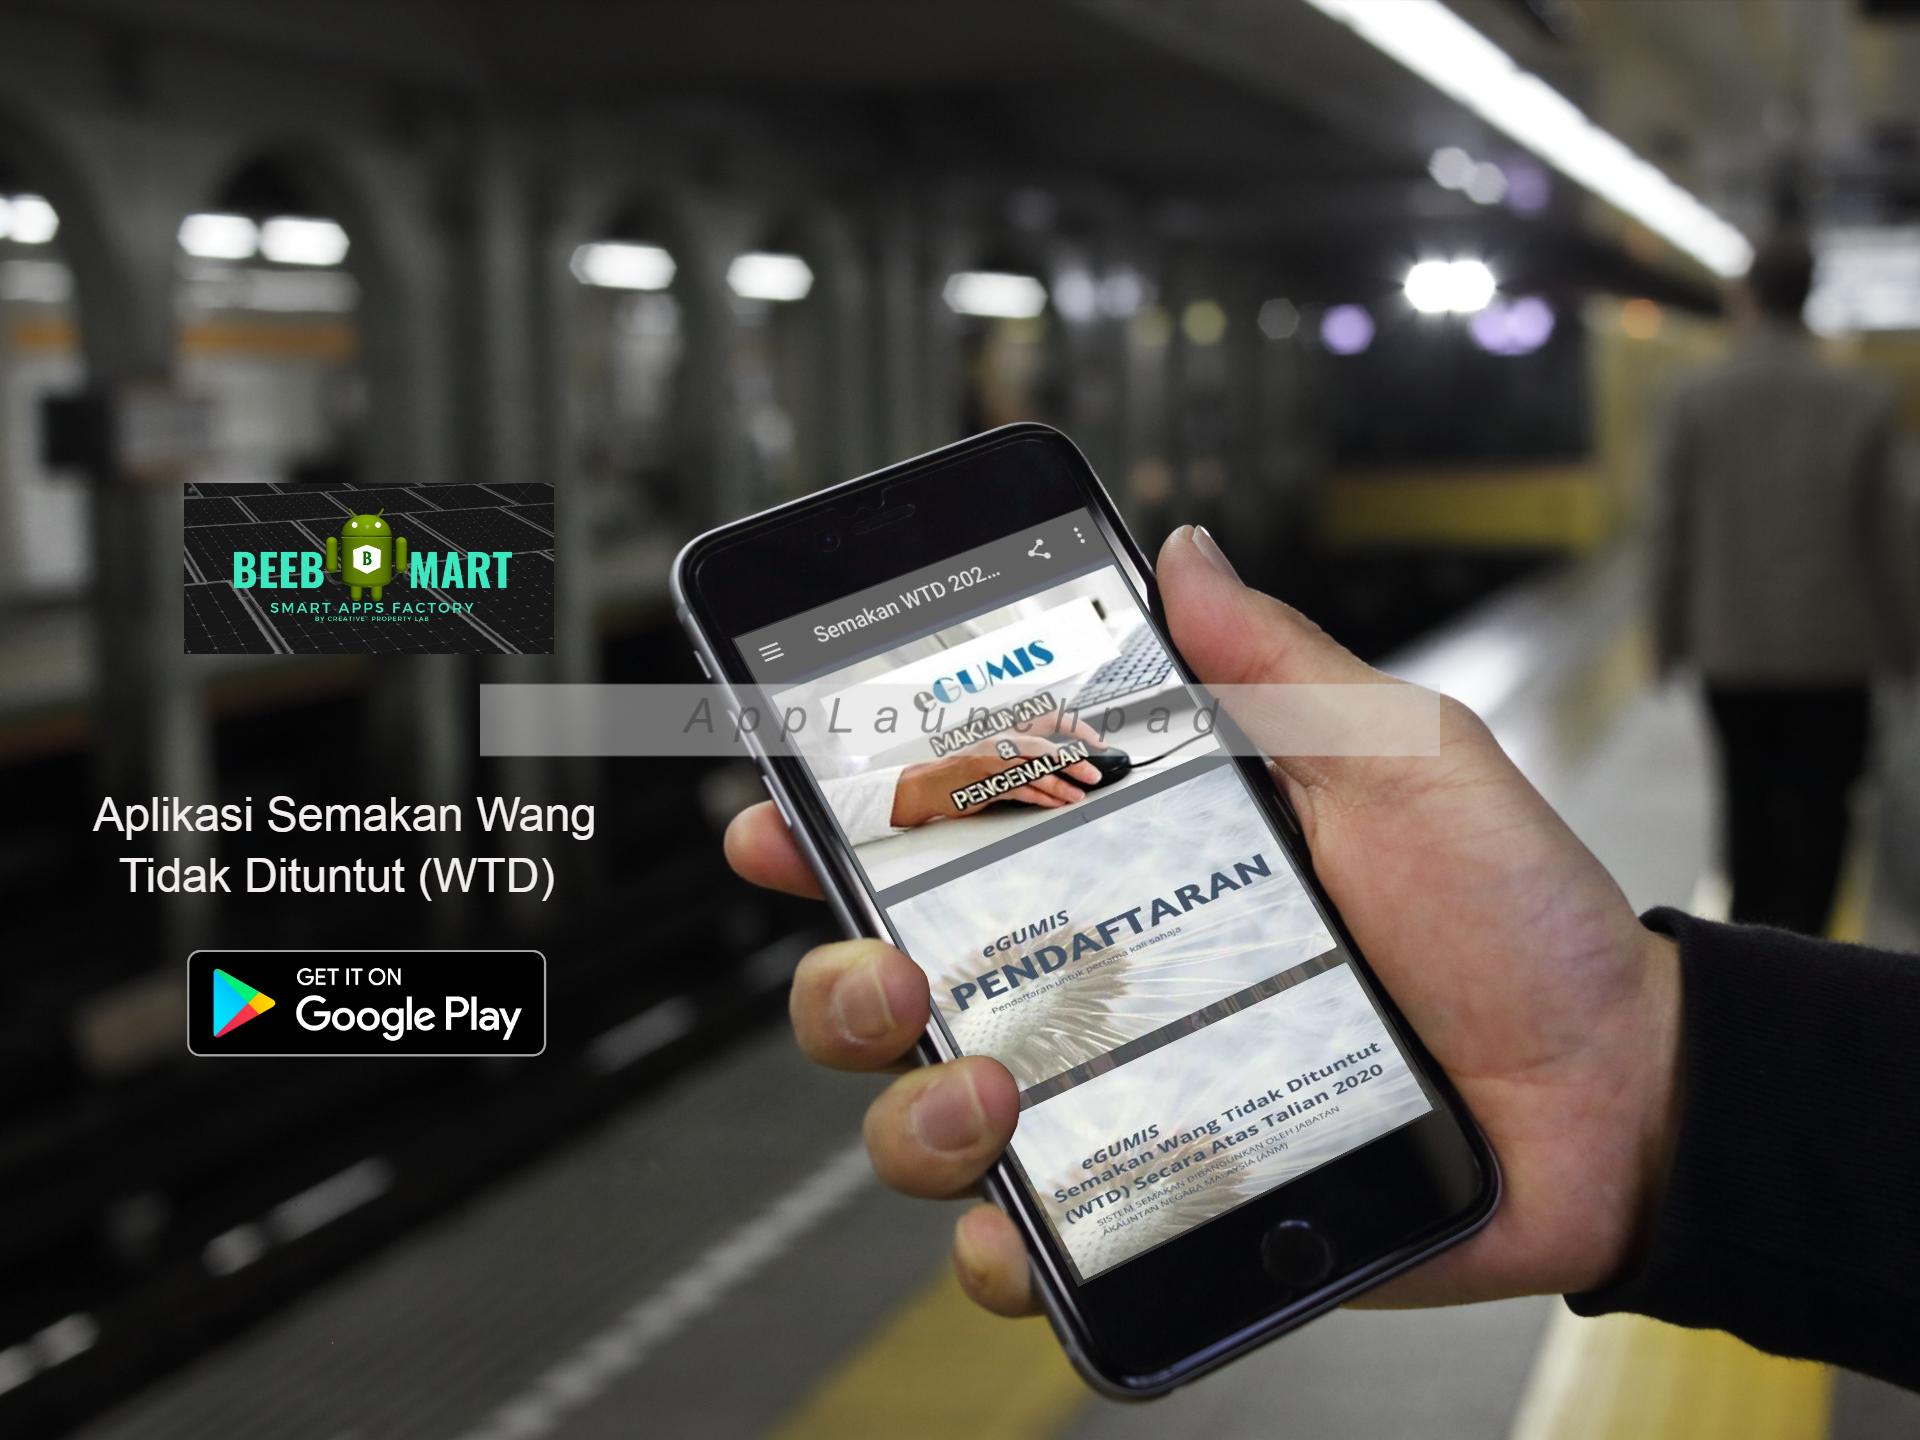 Semak Wang Tak Dituntut Wtd For Android Apk Download